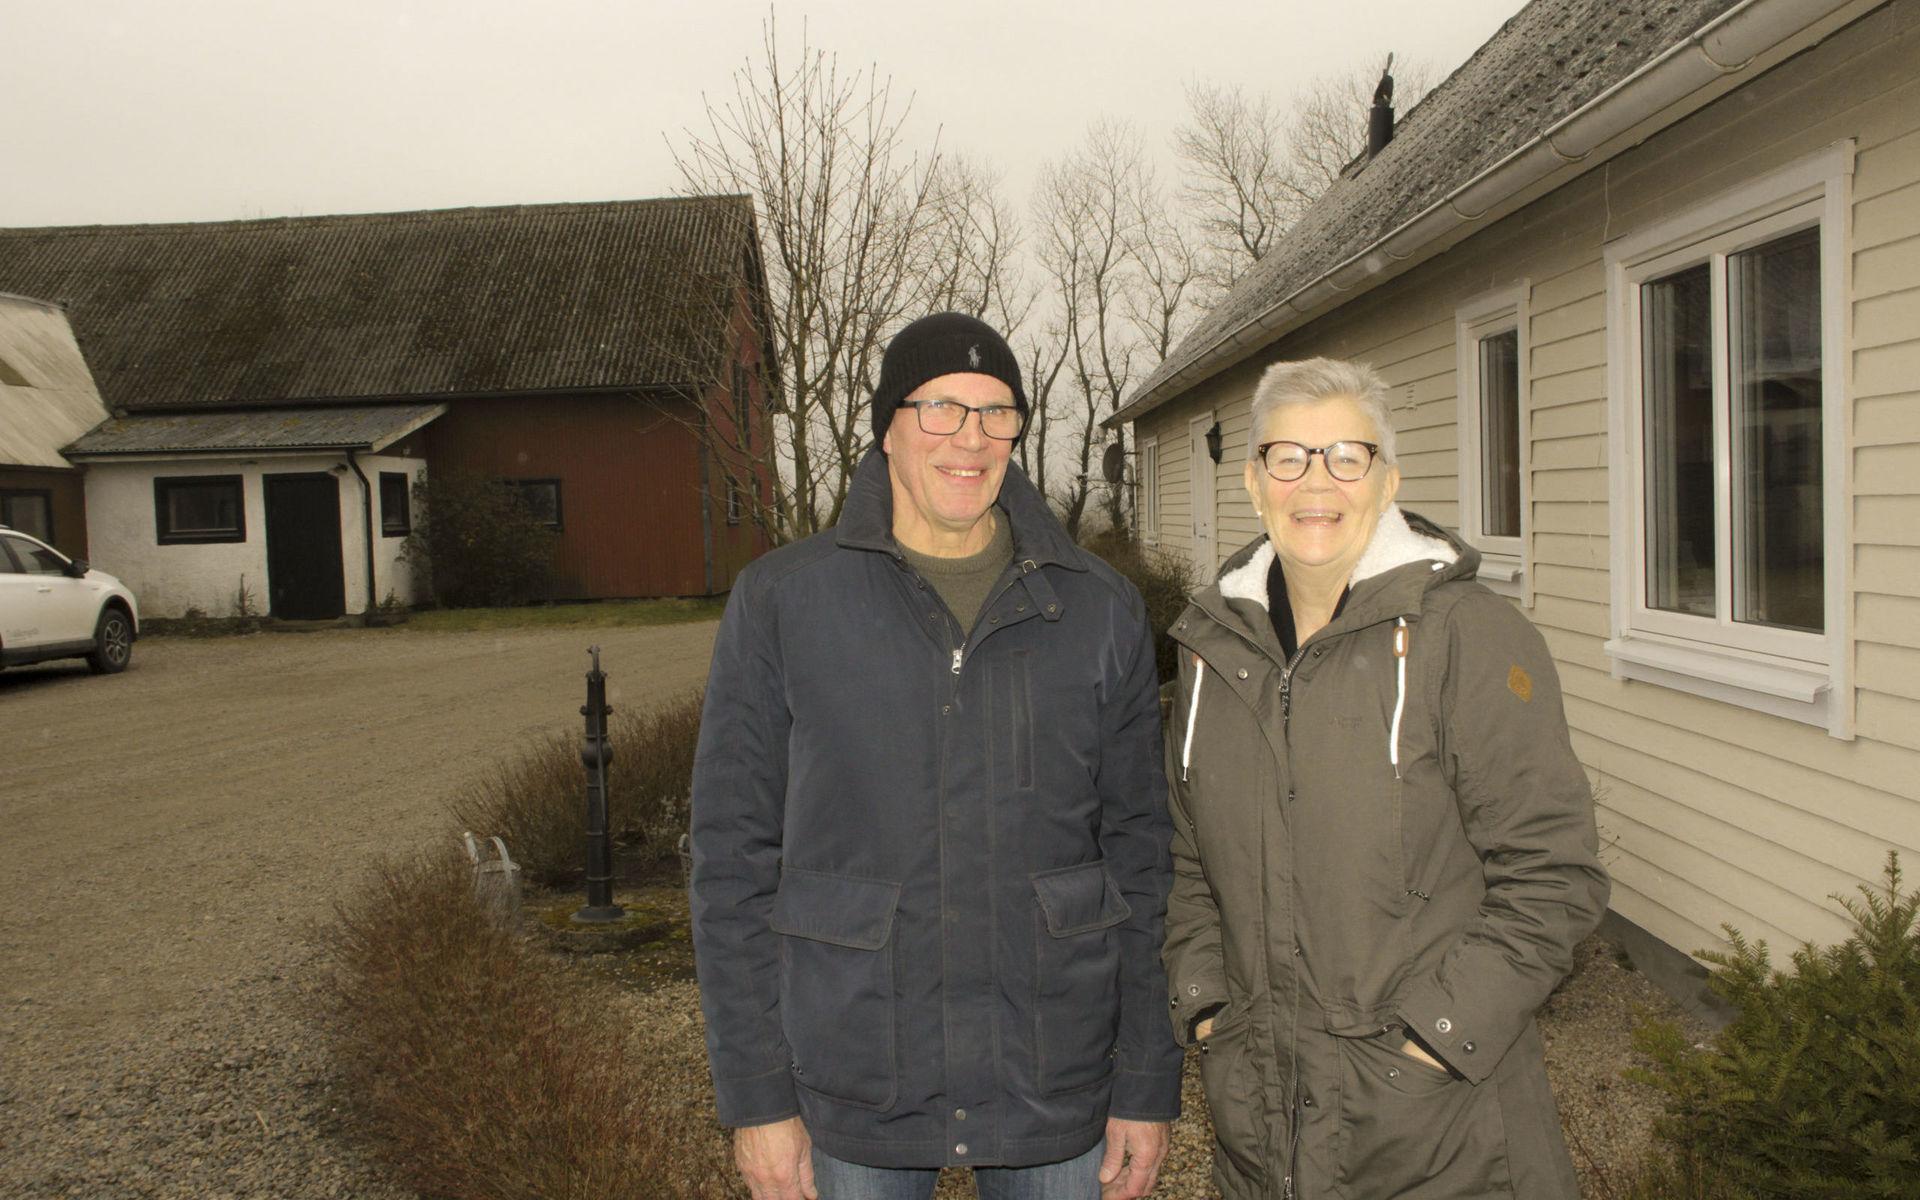 Bosse och Ros-Marie Börjesson bor på släktgården Svensgård som hängt med sedan 1860-talet. De själva flyttade in på gården 1987. Fastigheten är från Bosses mormors hem. Nu odlar de gräs på de 25 hektaren i omgivningen.